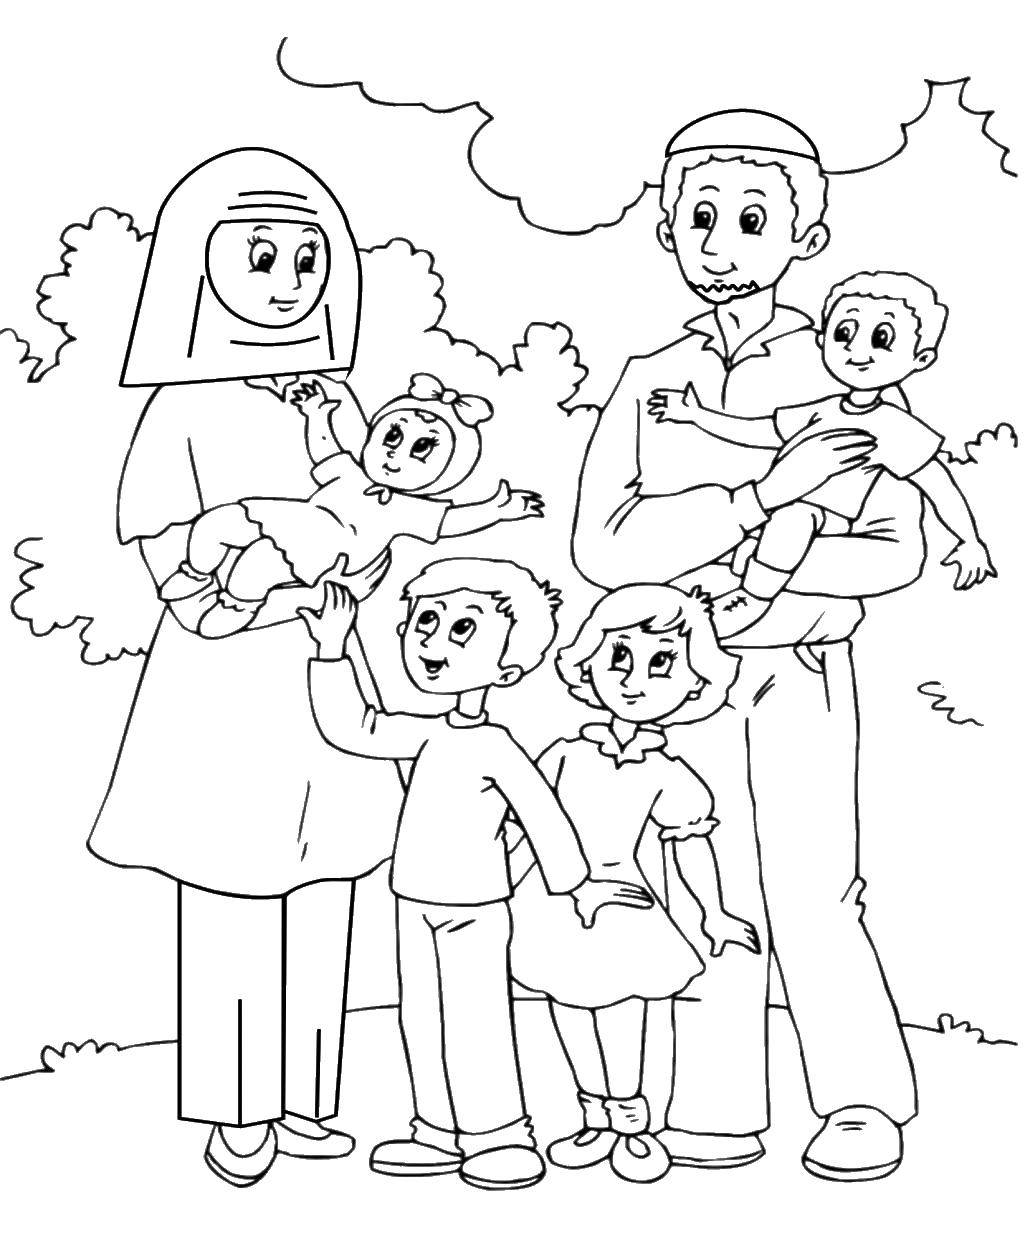 Название: Раскраска Религиозная семья. Категория: Члены семьи. Теги: Семья, родители, дети.